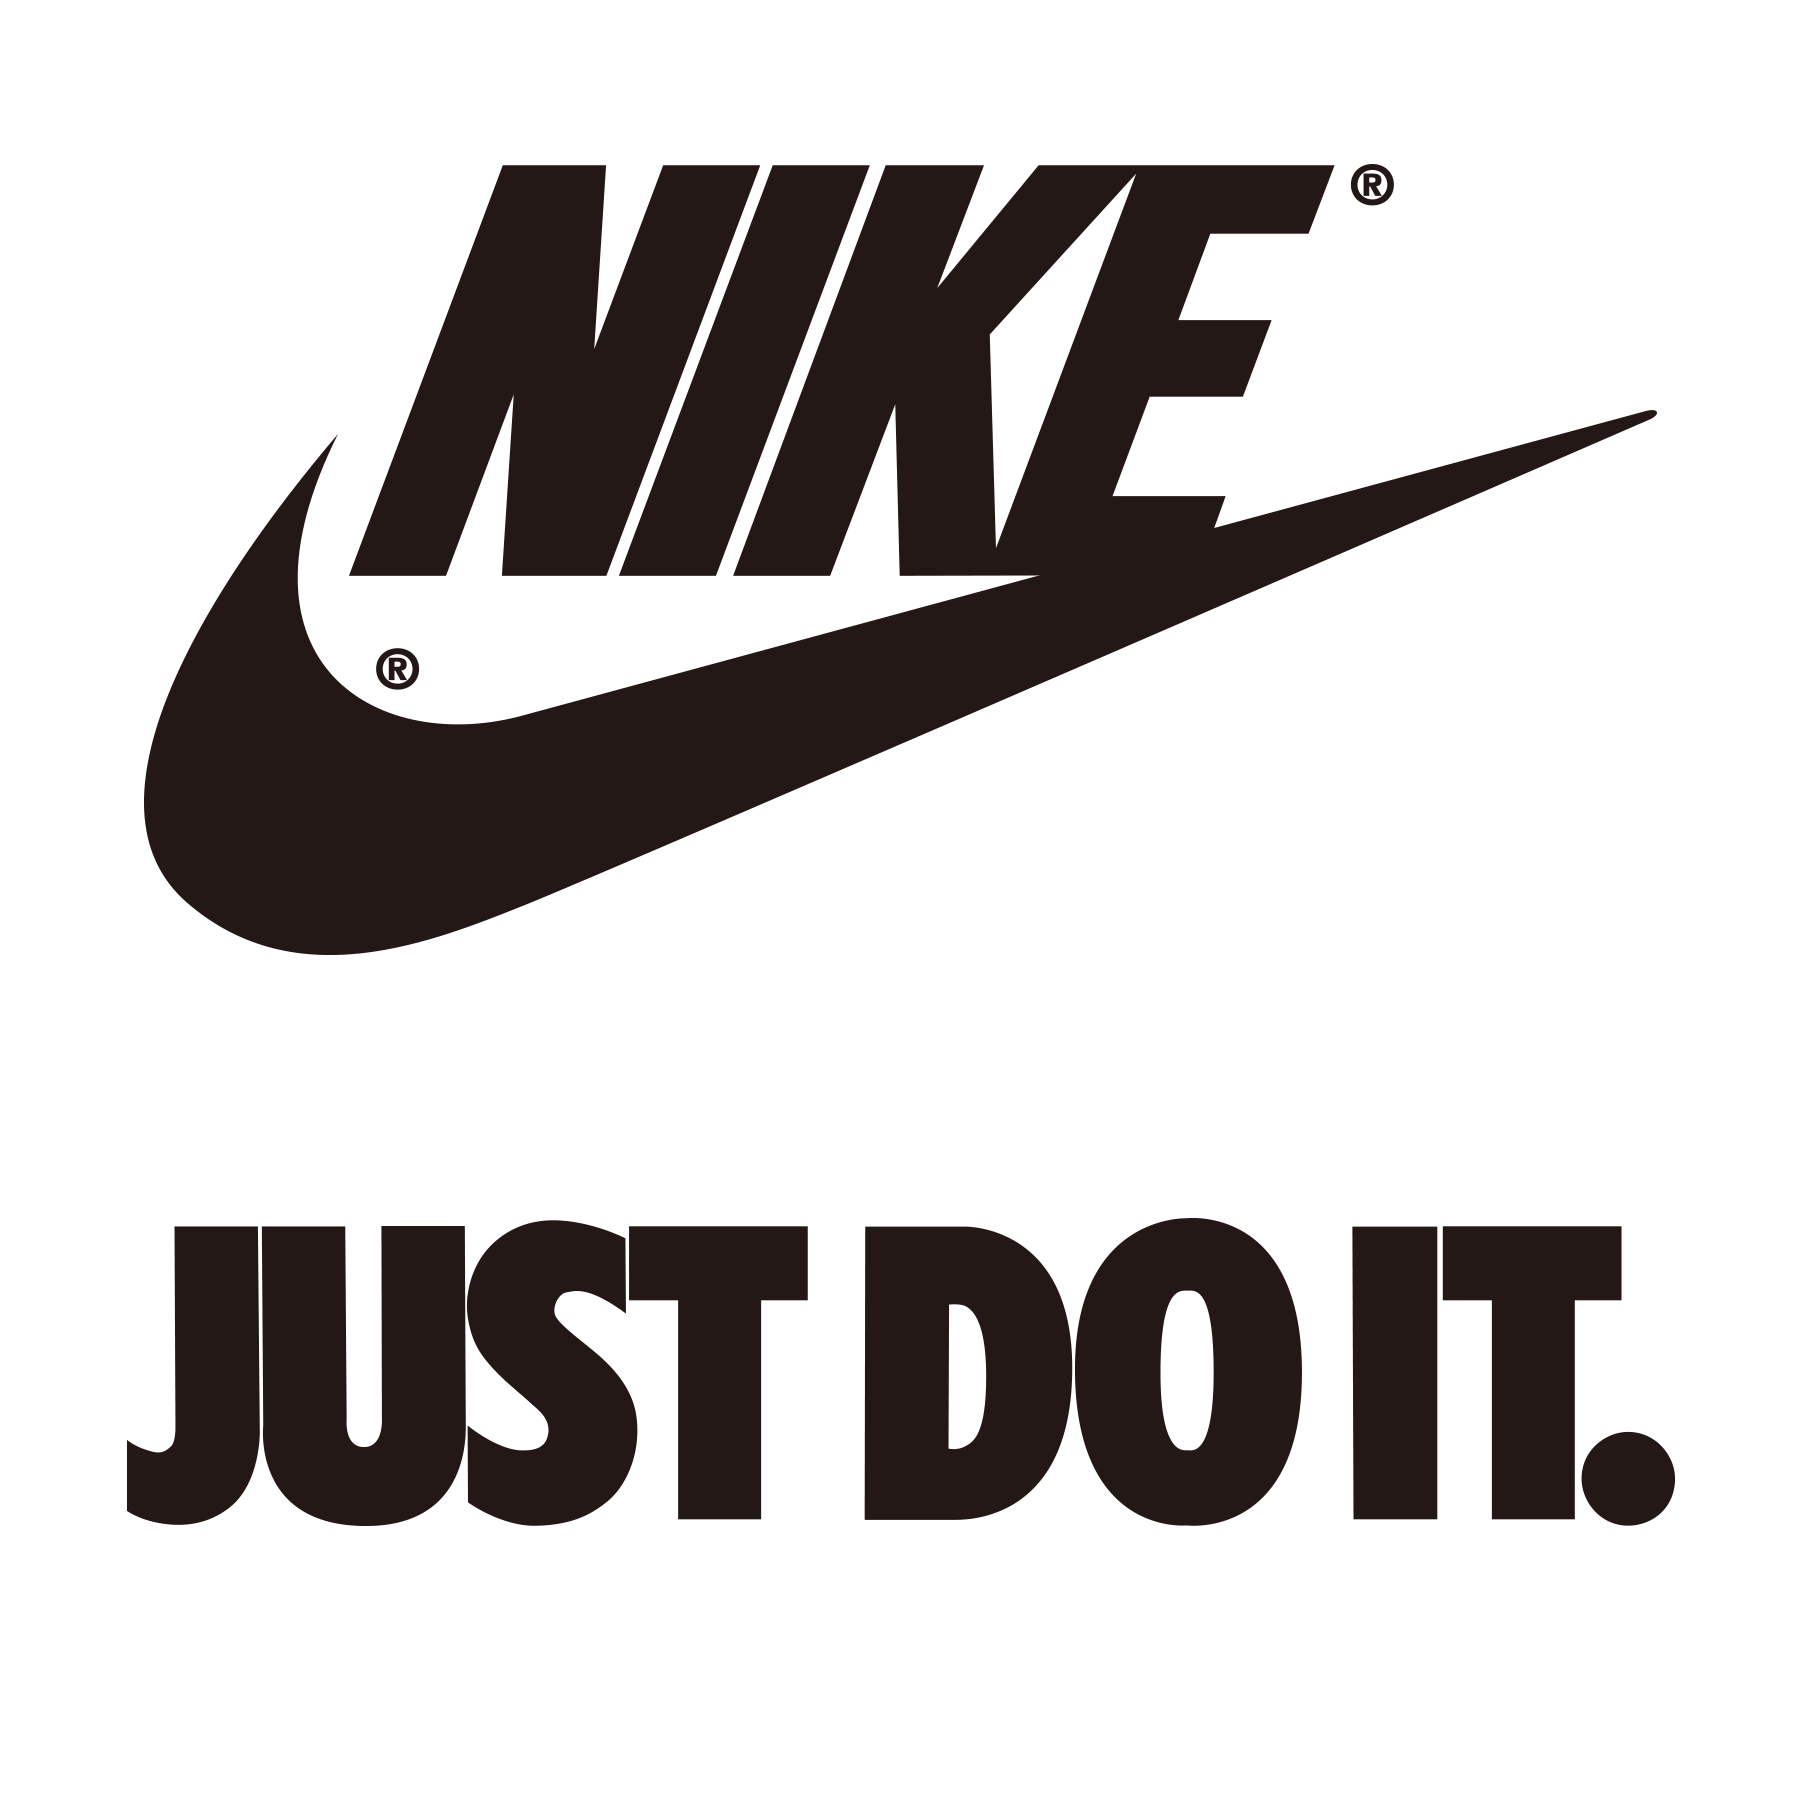 Download Force Nike Brand Air Jordan Shoe Logo HQ PNG Image in ...